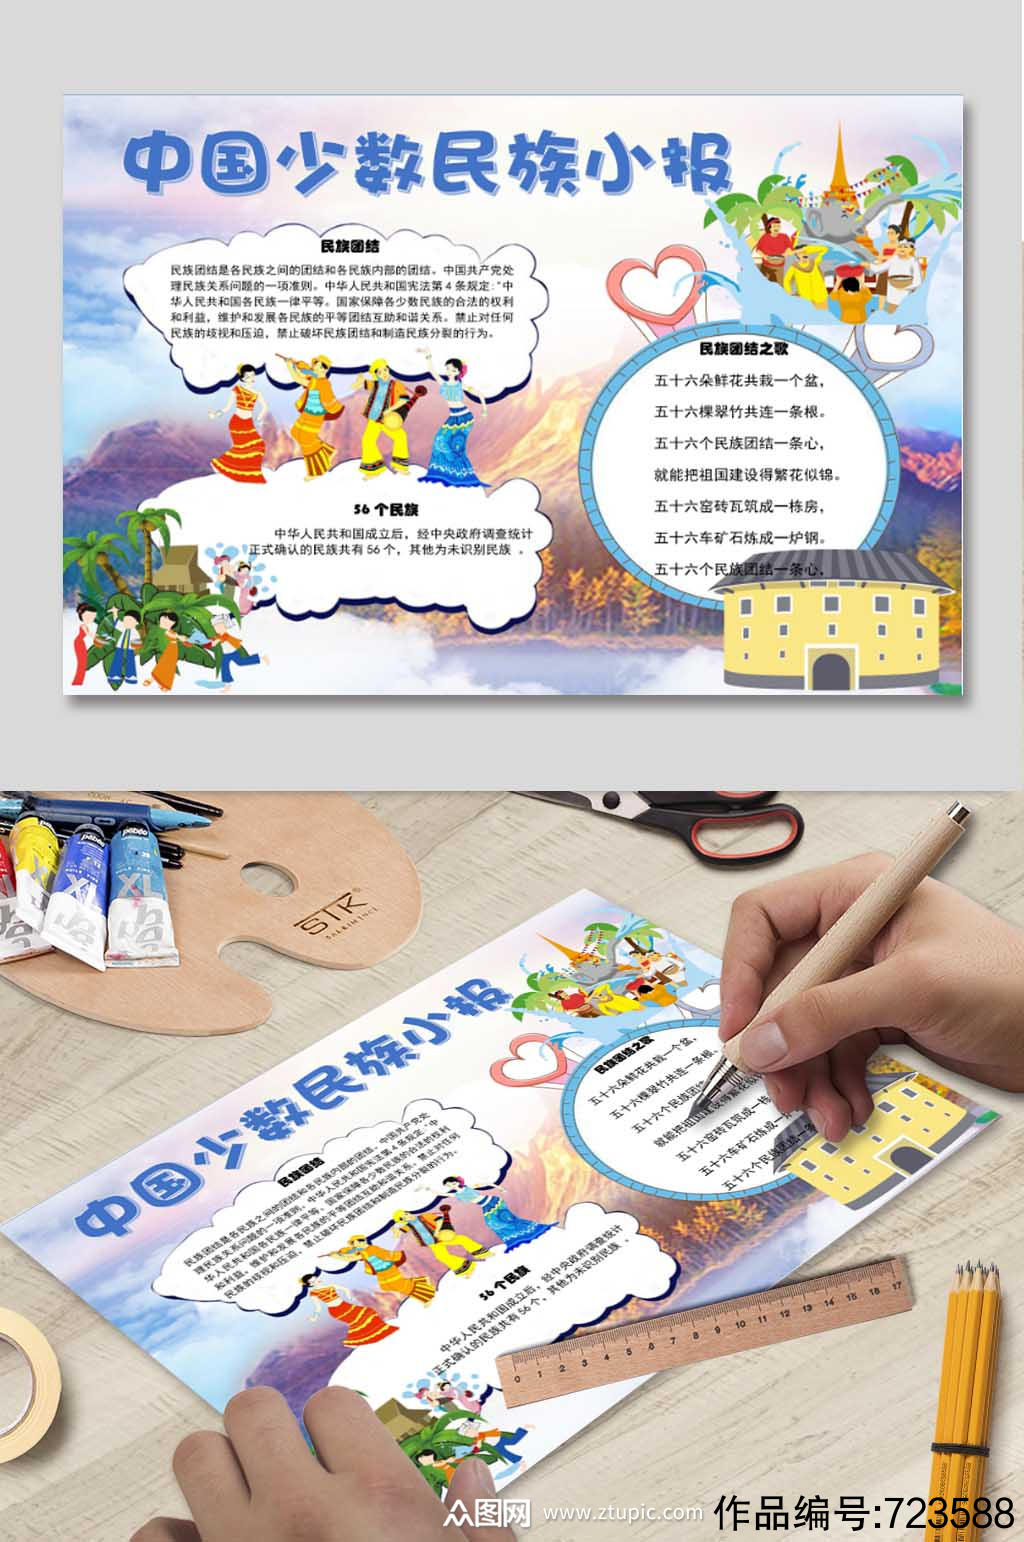 中国少数民族手抄报模板下载-编号723588-众图网